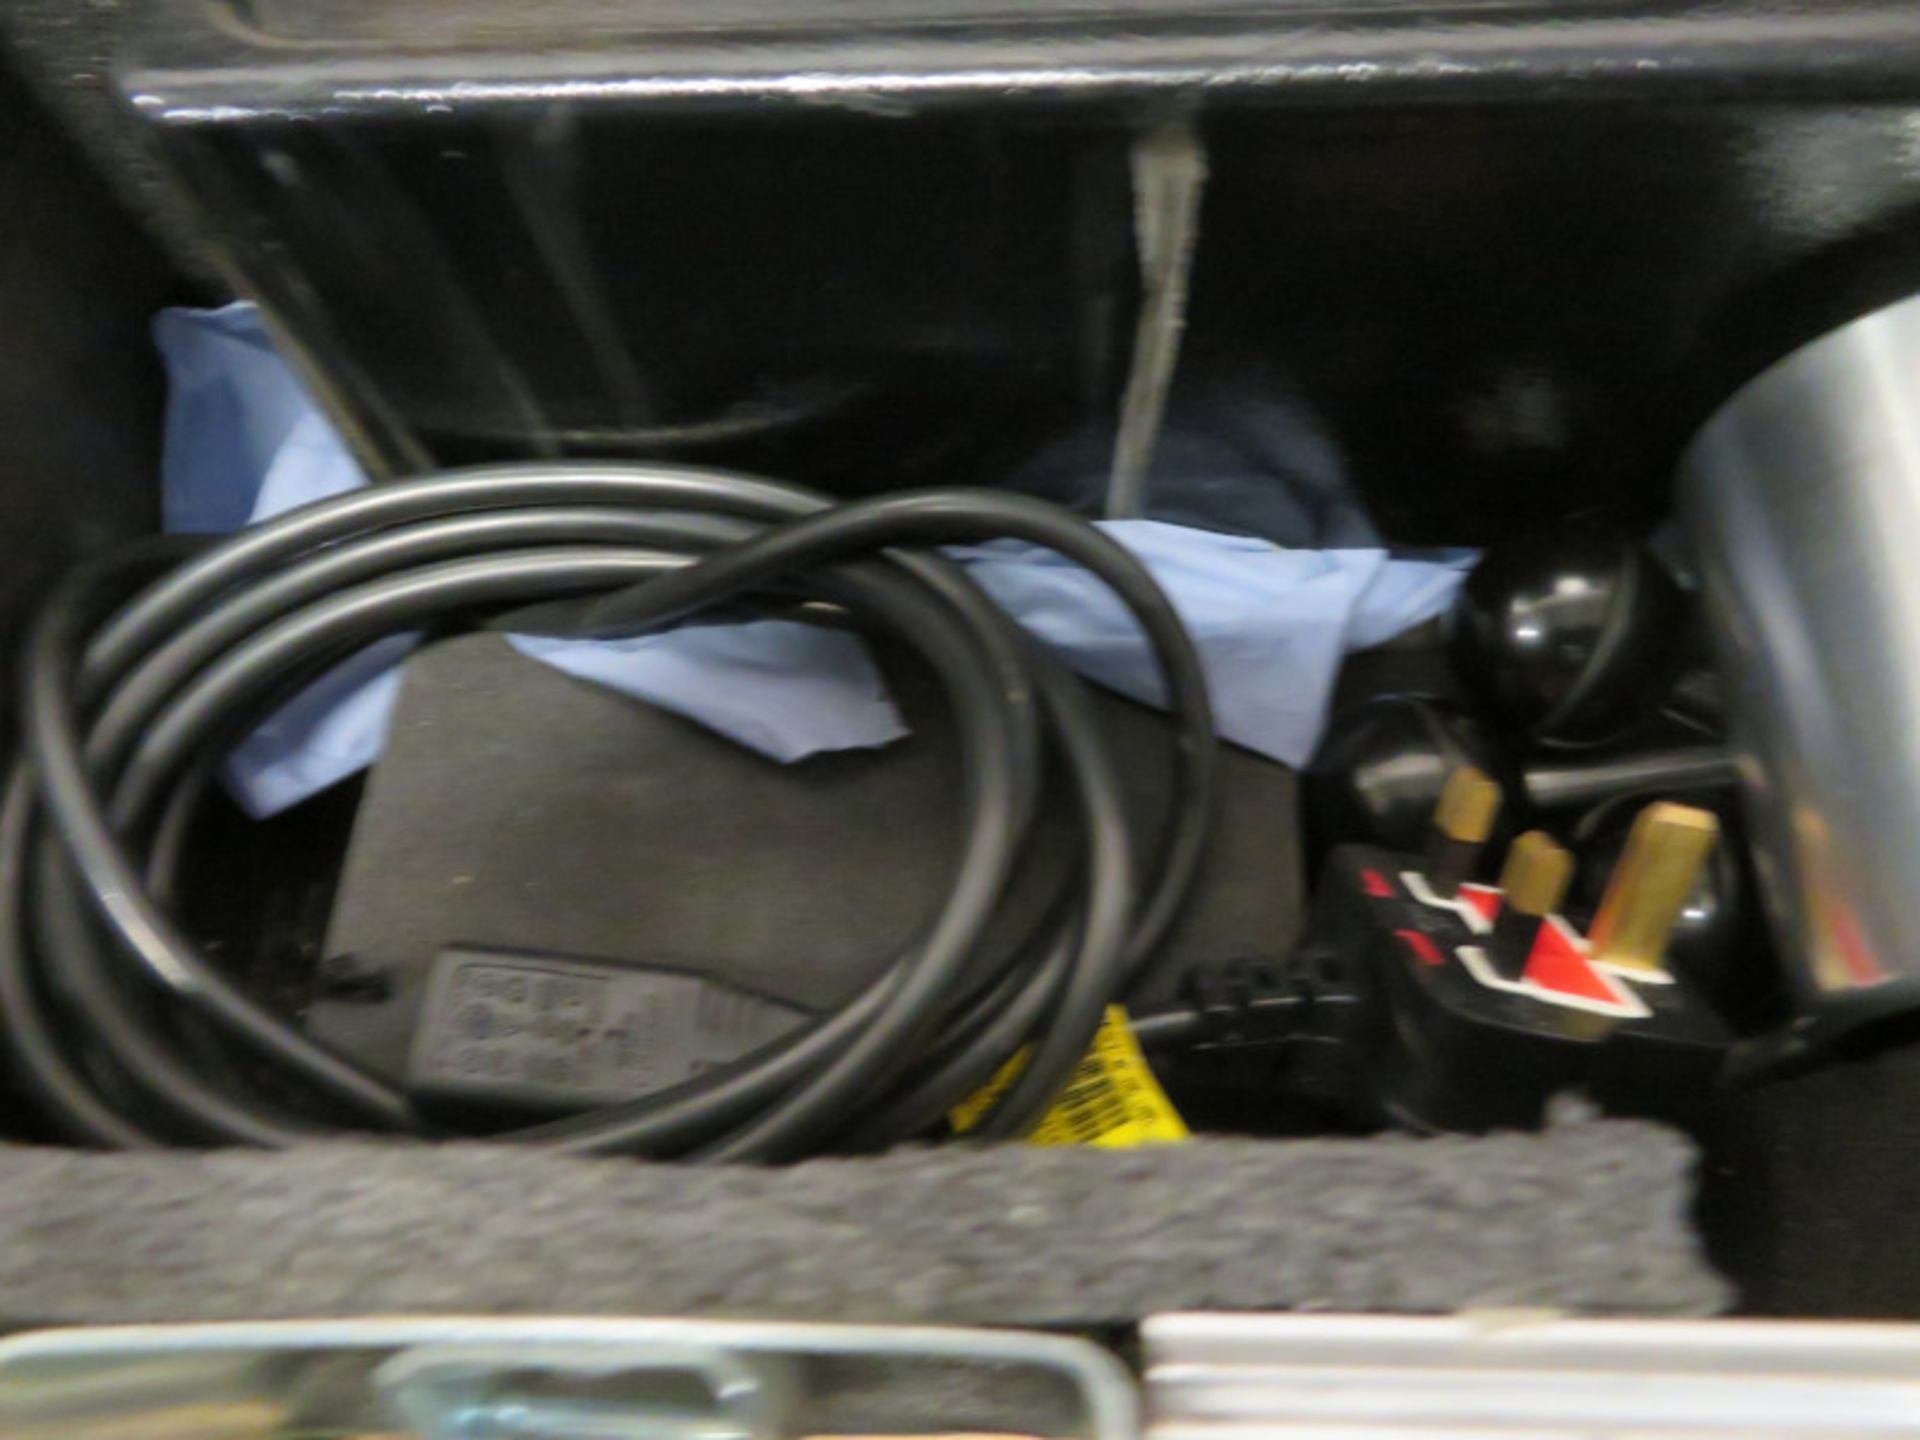 Druck DPI 312 Hydraulic Pressure Calibrator Unit In A Case - Image 4 of 4